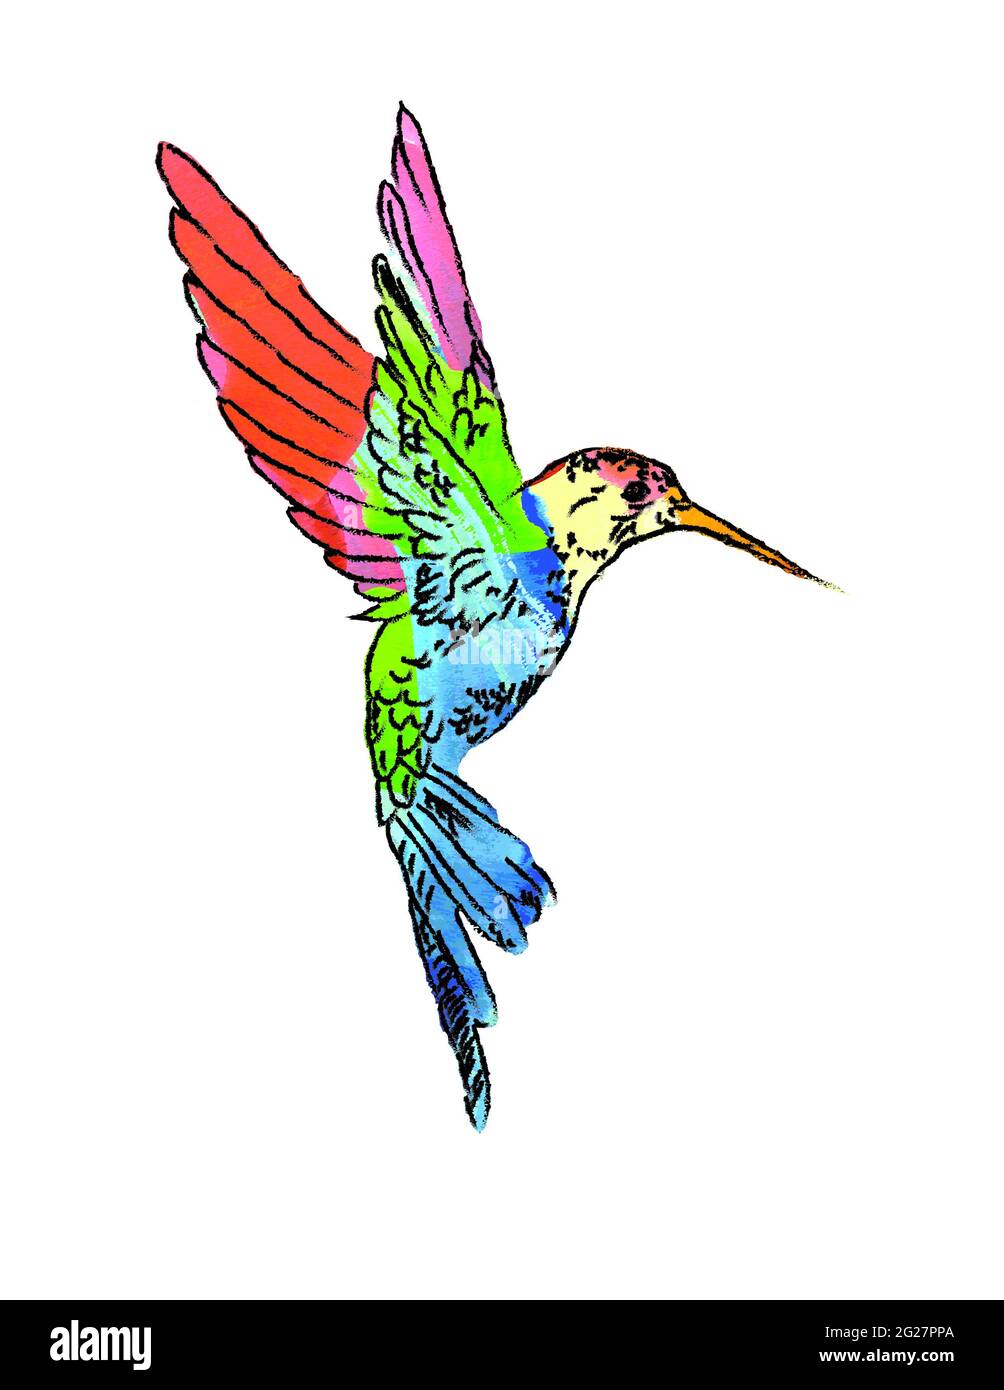 Les colibris sont des oiseaux indigènes des Amériques et constituent la famille biologique des Trochilidae. L'art Hummingbird Banque D'Images